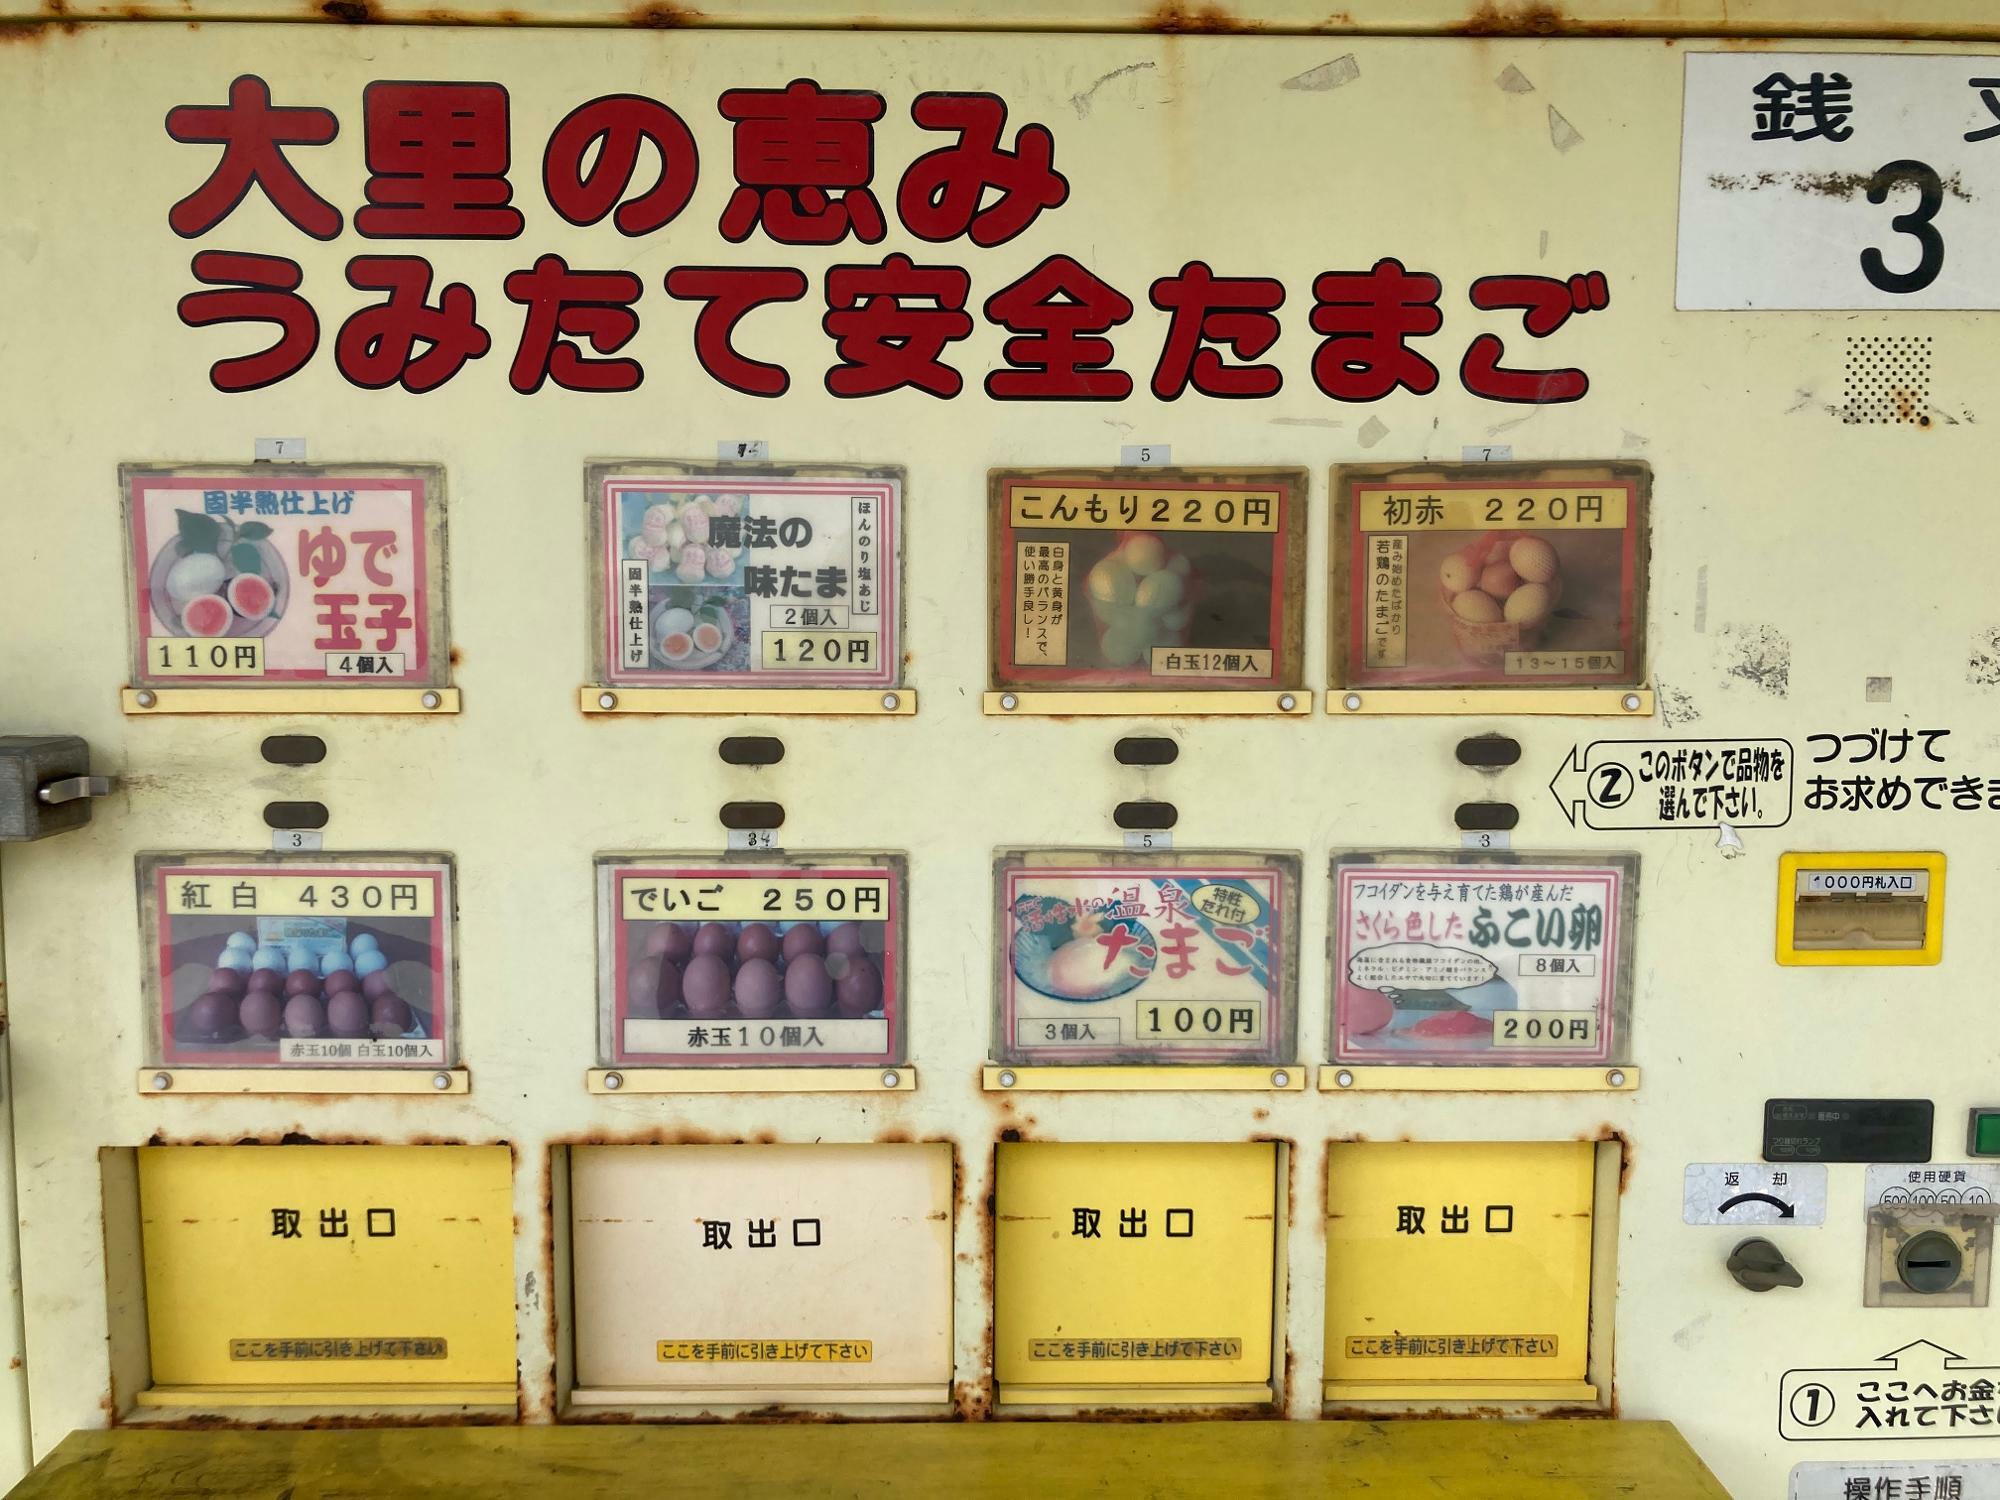 卵の自販機。お金を入れて商品を選択すると、下の取り出し口から出てきます。お札は1000円札まで。